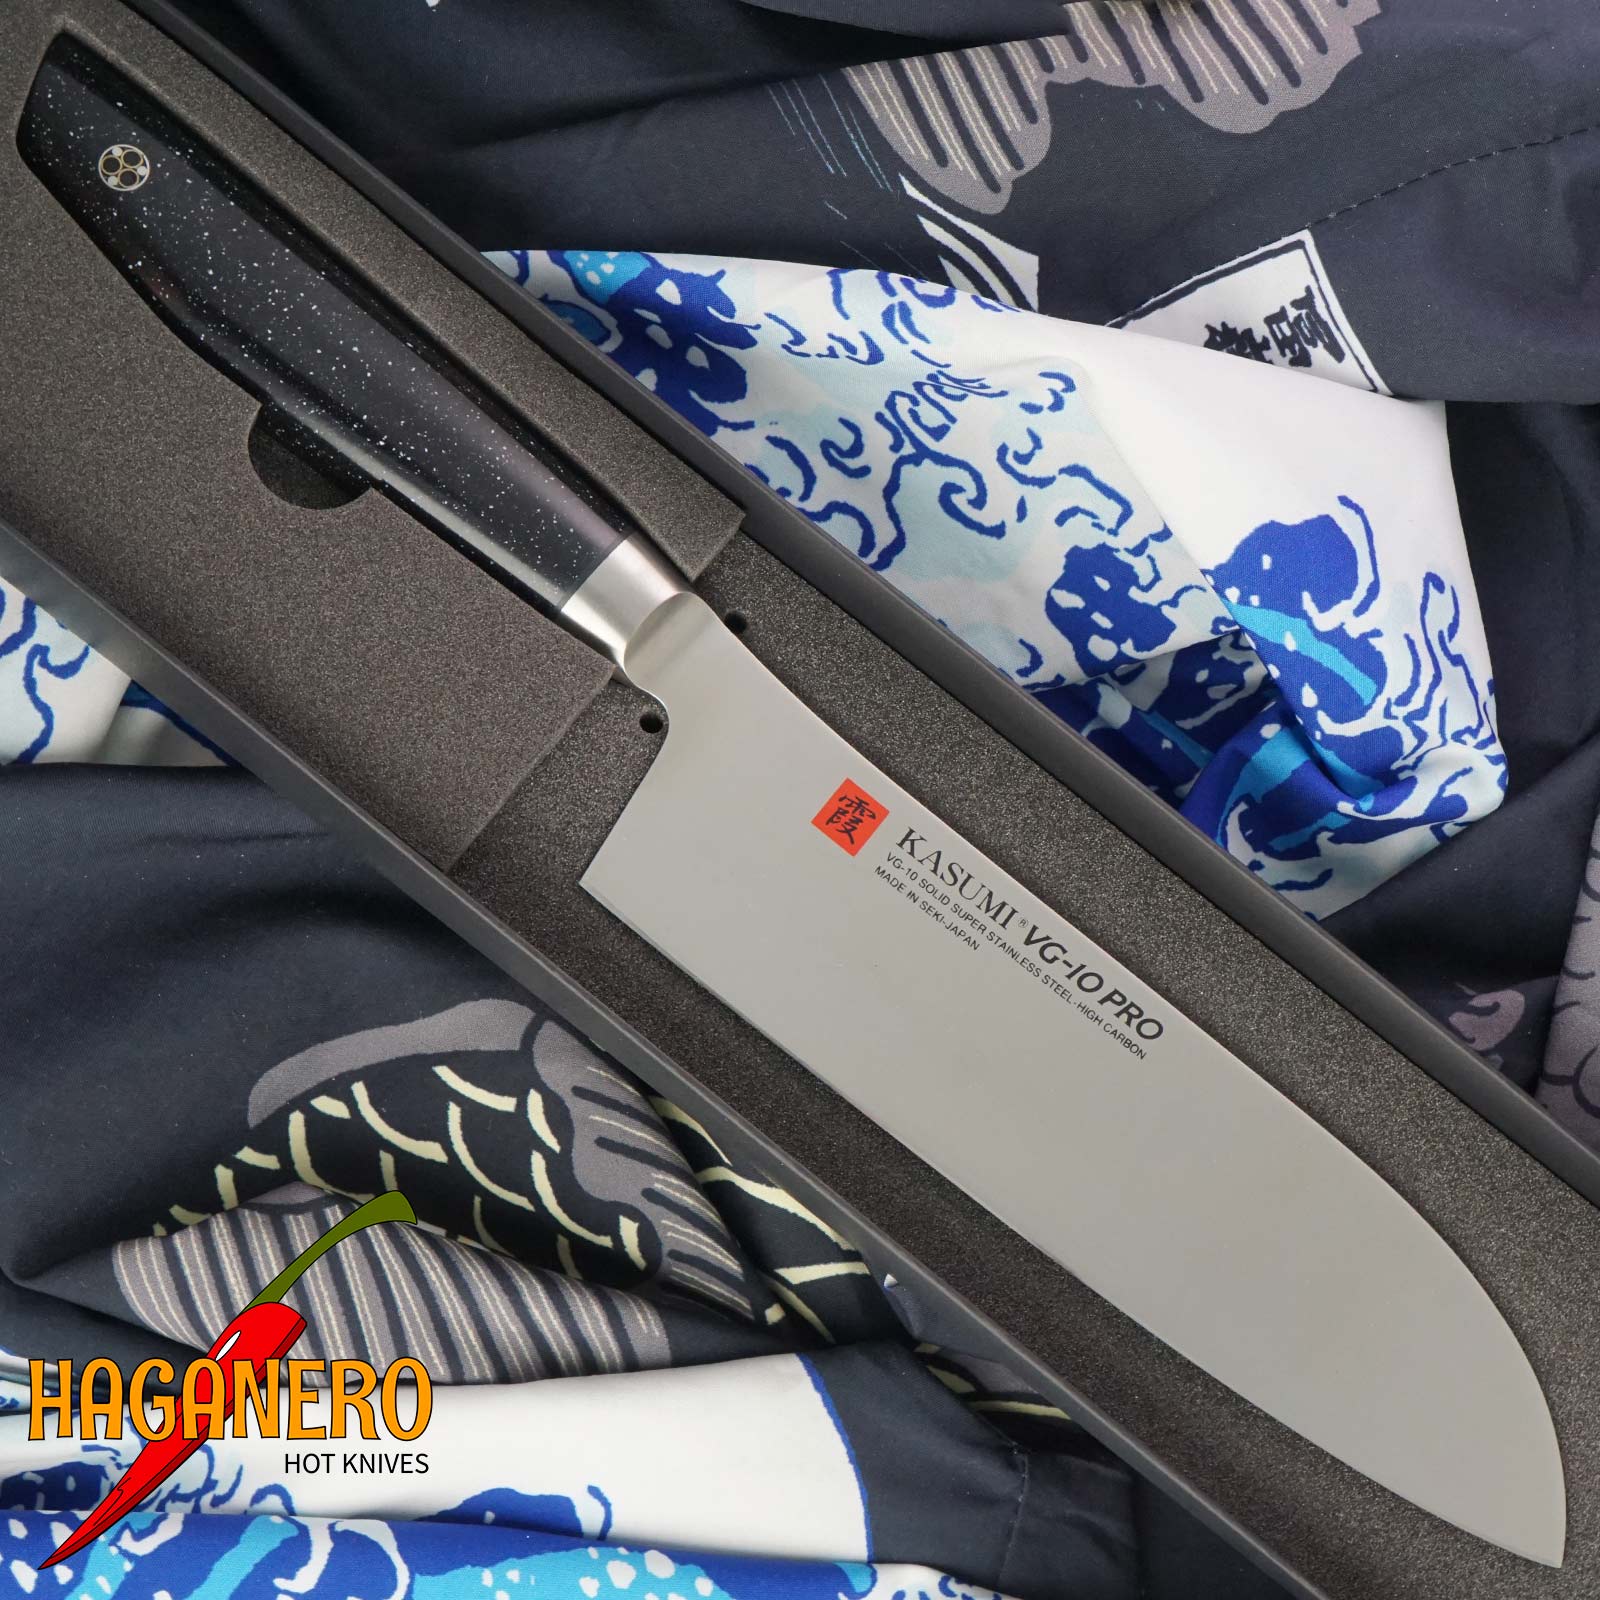 Santoku Japanese kitchen knife Kasumi VG10 Pro 54018 18cm